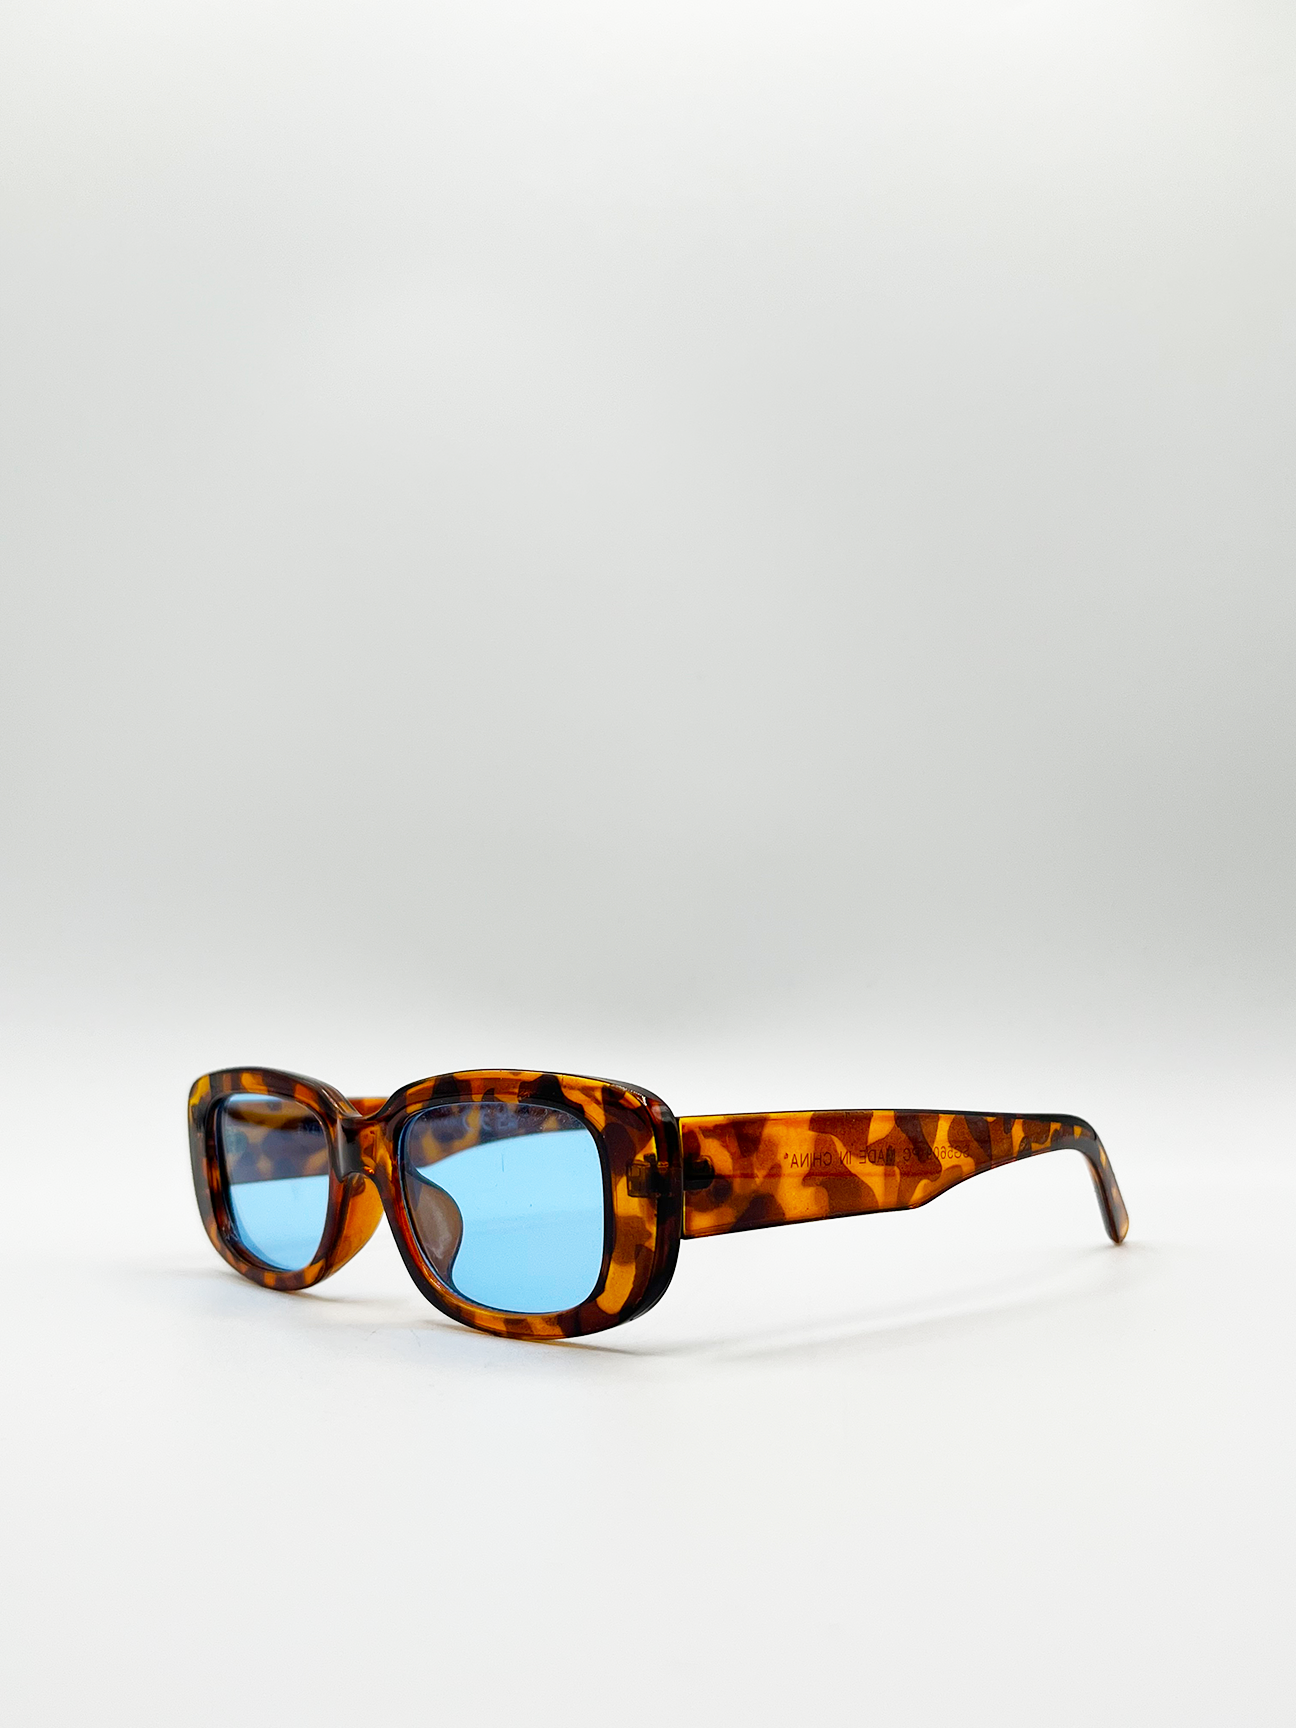 Tortoiseshell Rectangle Sunglasses with Blue Lenses